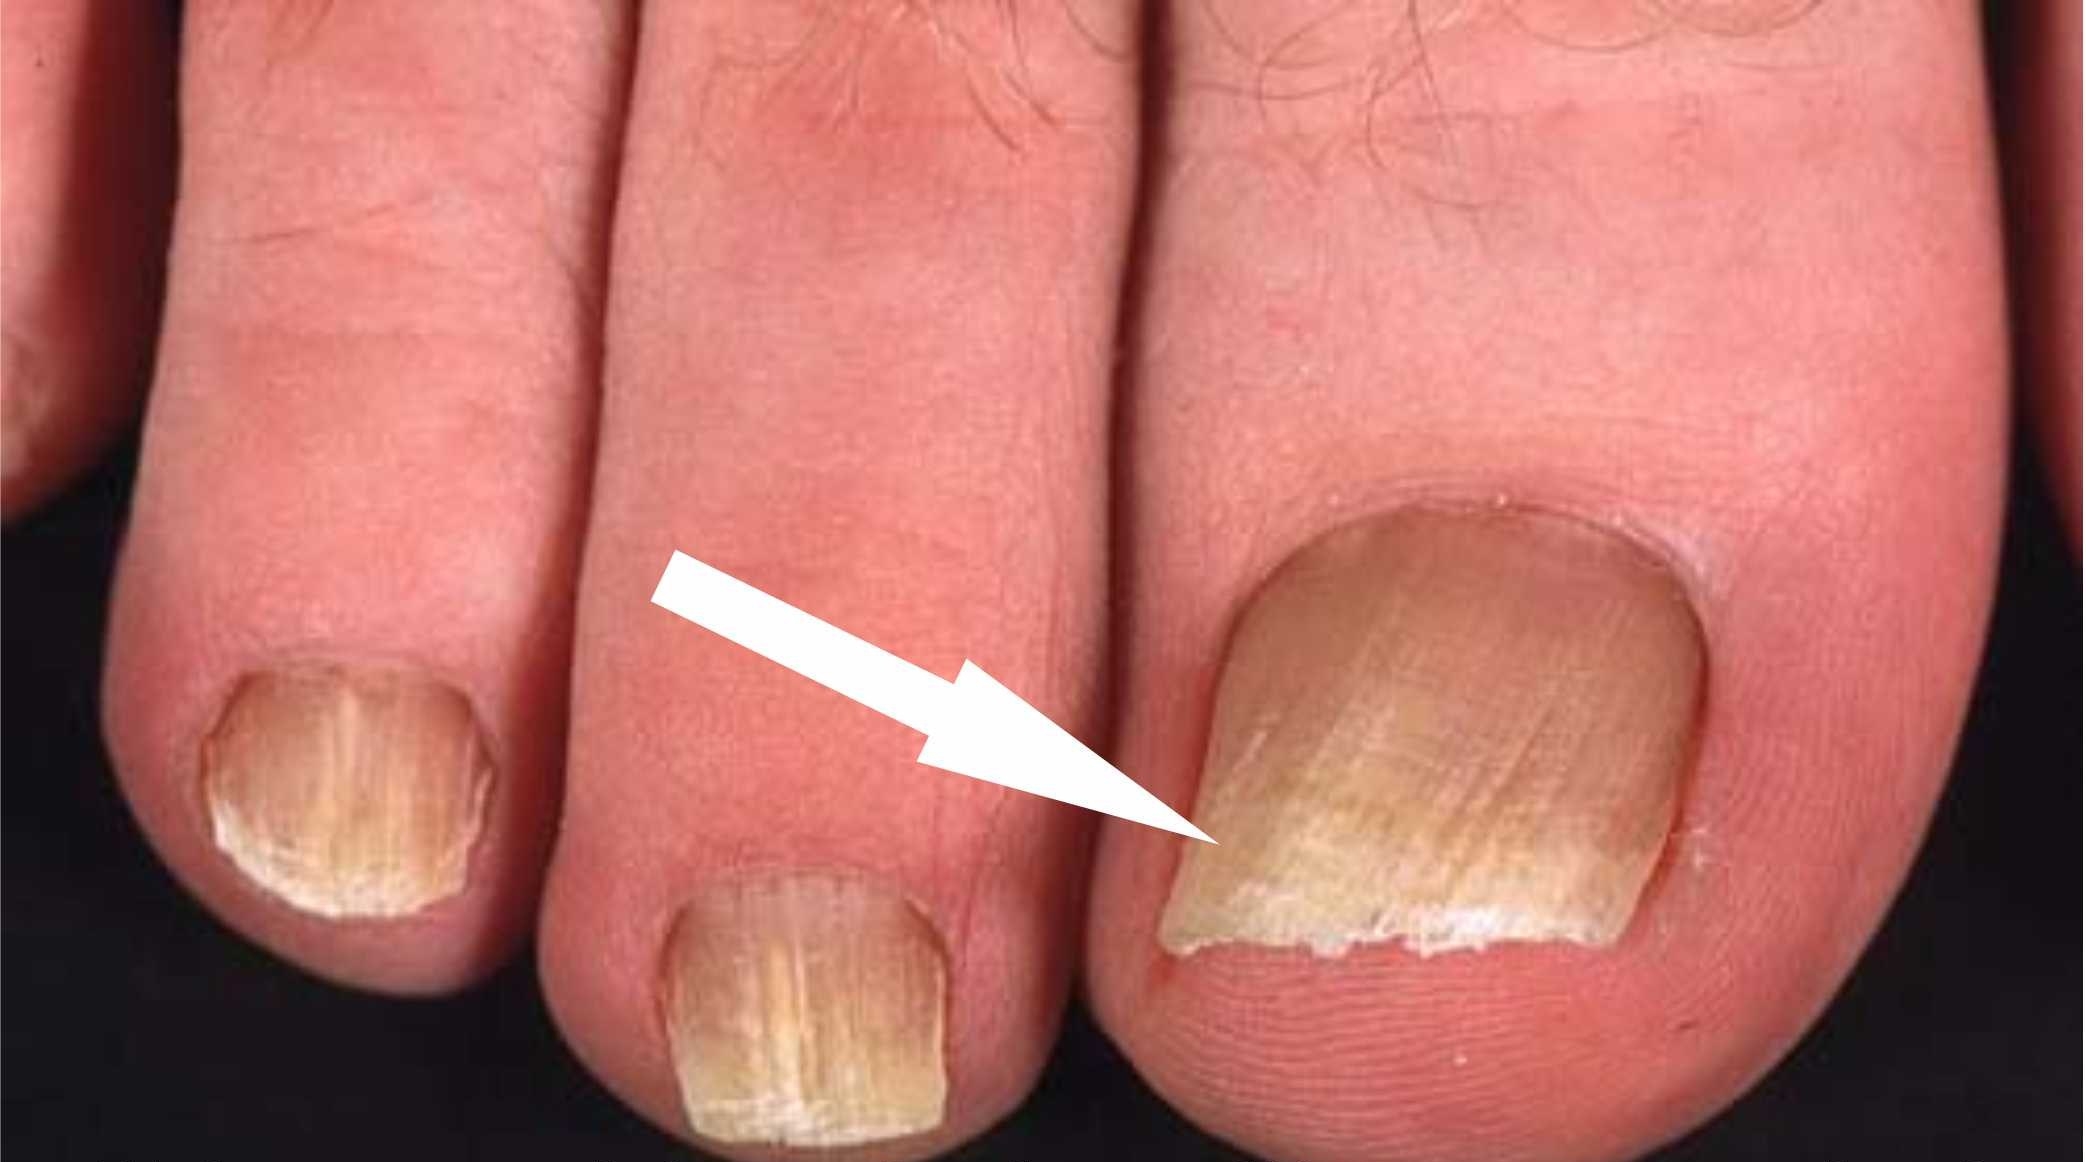  Грибковые поражения ногтей